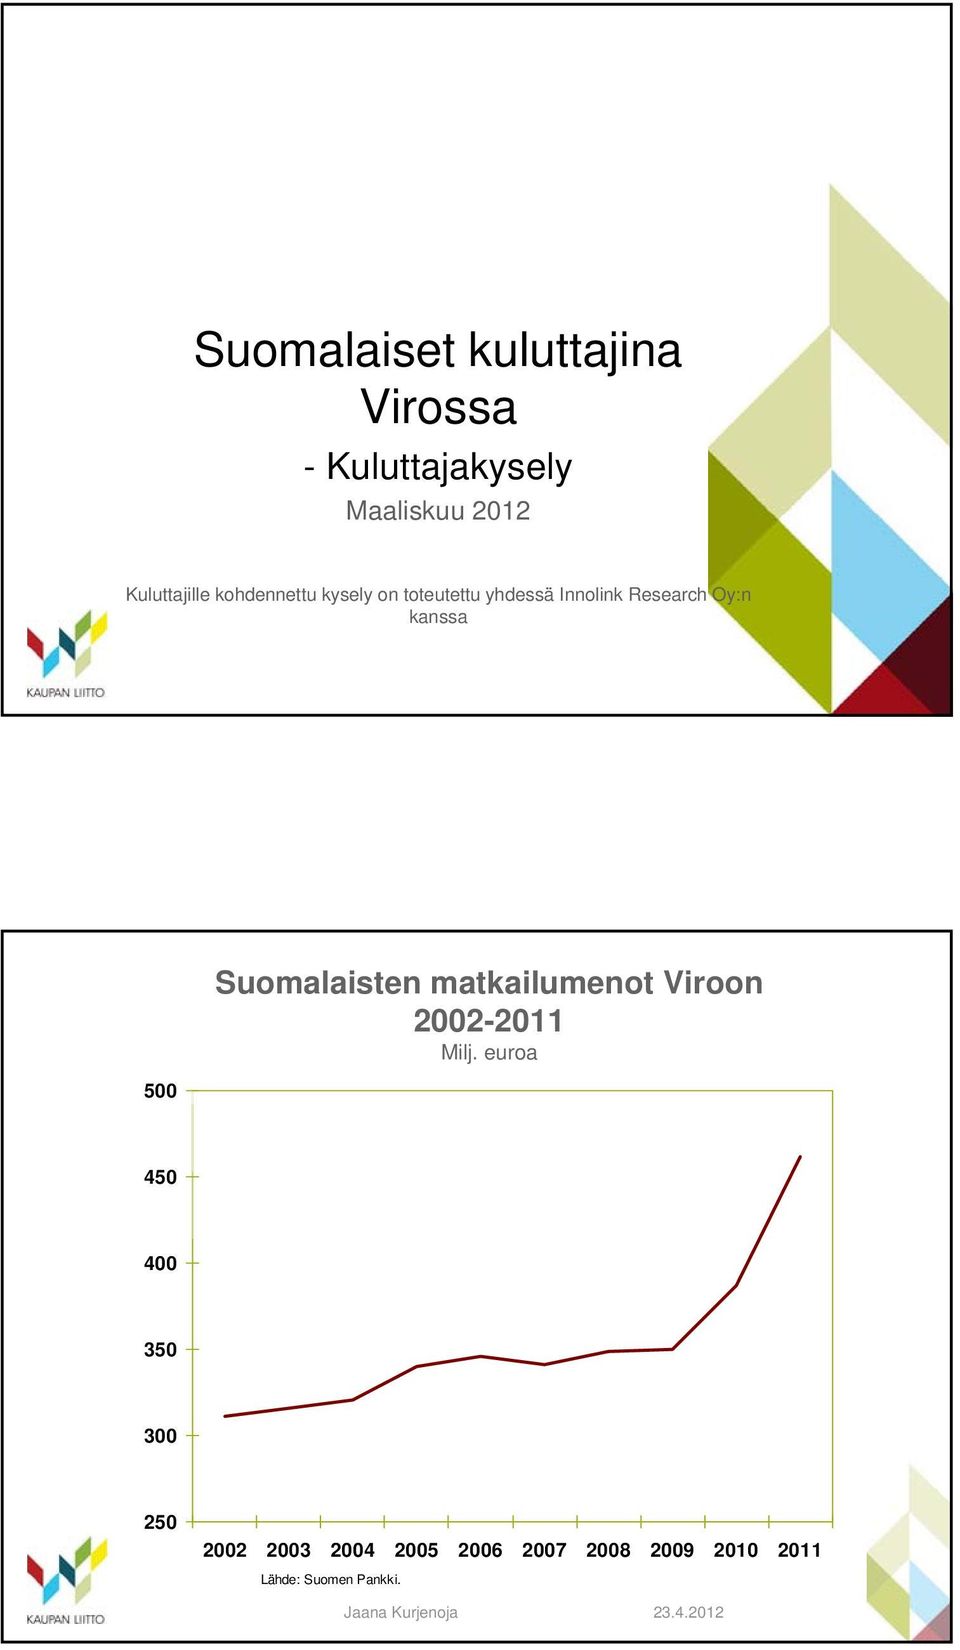 Oy:n kanssa 500 Suomalaisten matkailumenot Viroon 2002-2011 Milj.